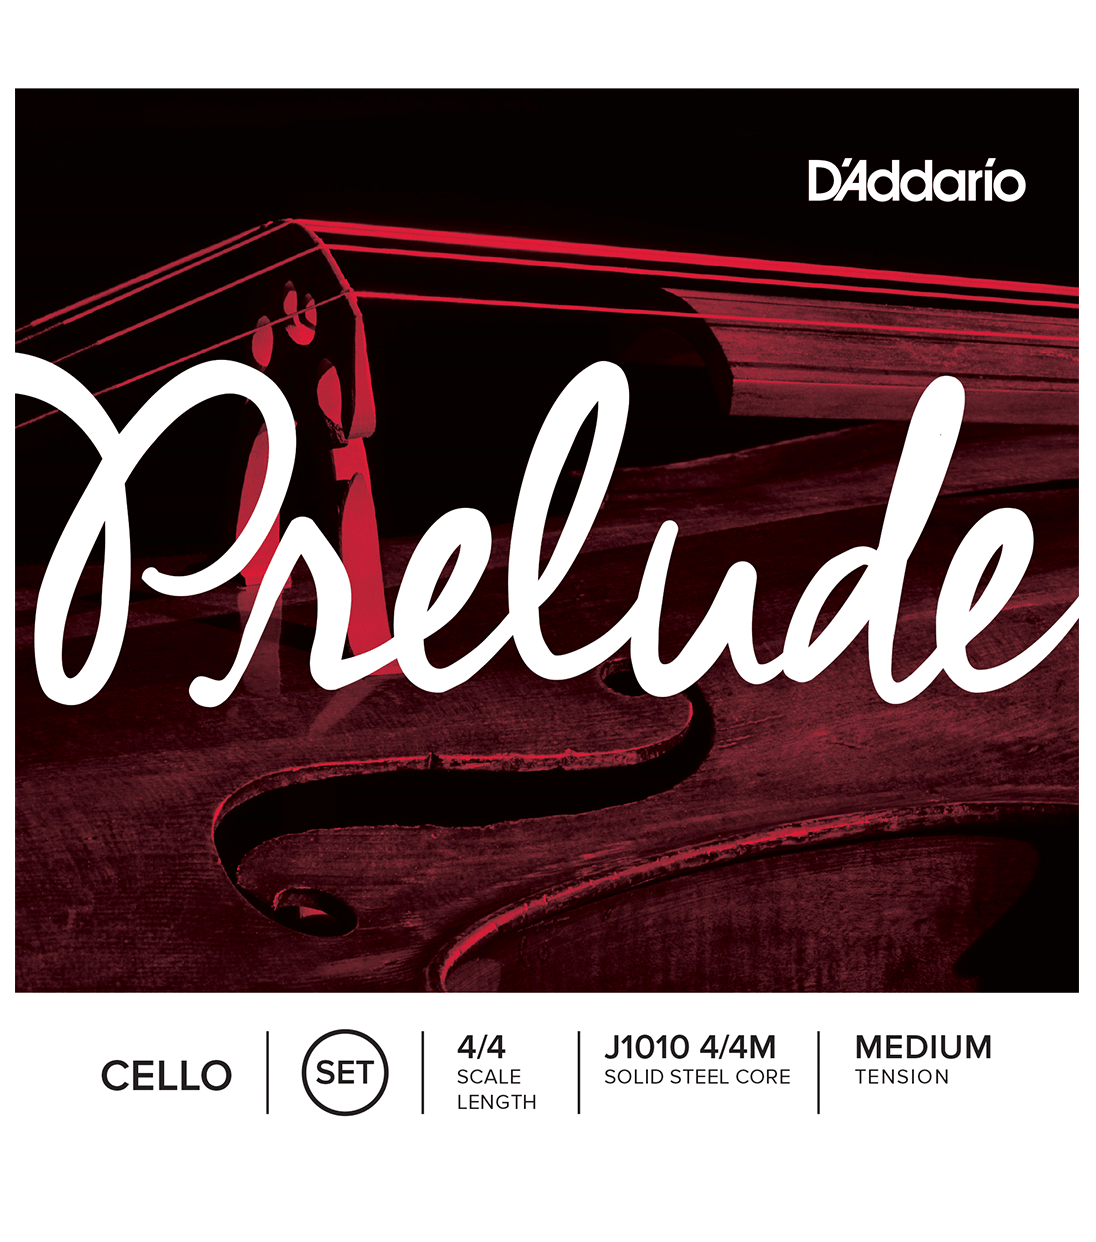 D'Addario Prelude Cello String Set 4/4 Medium Tension